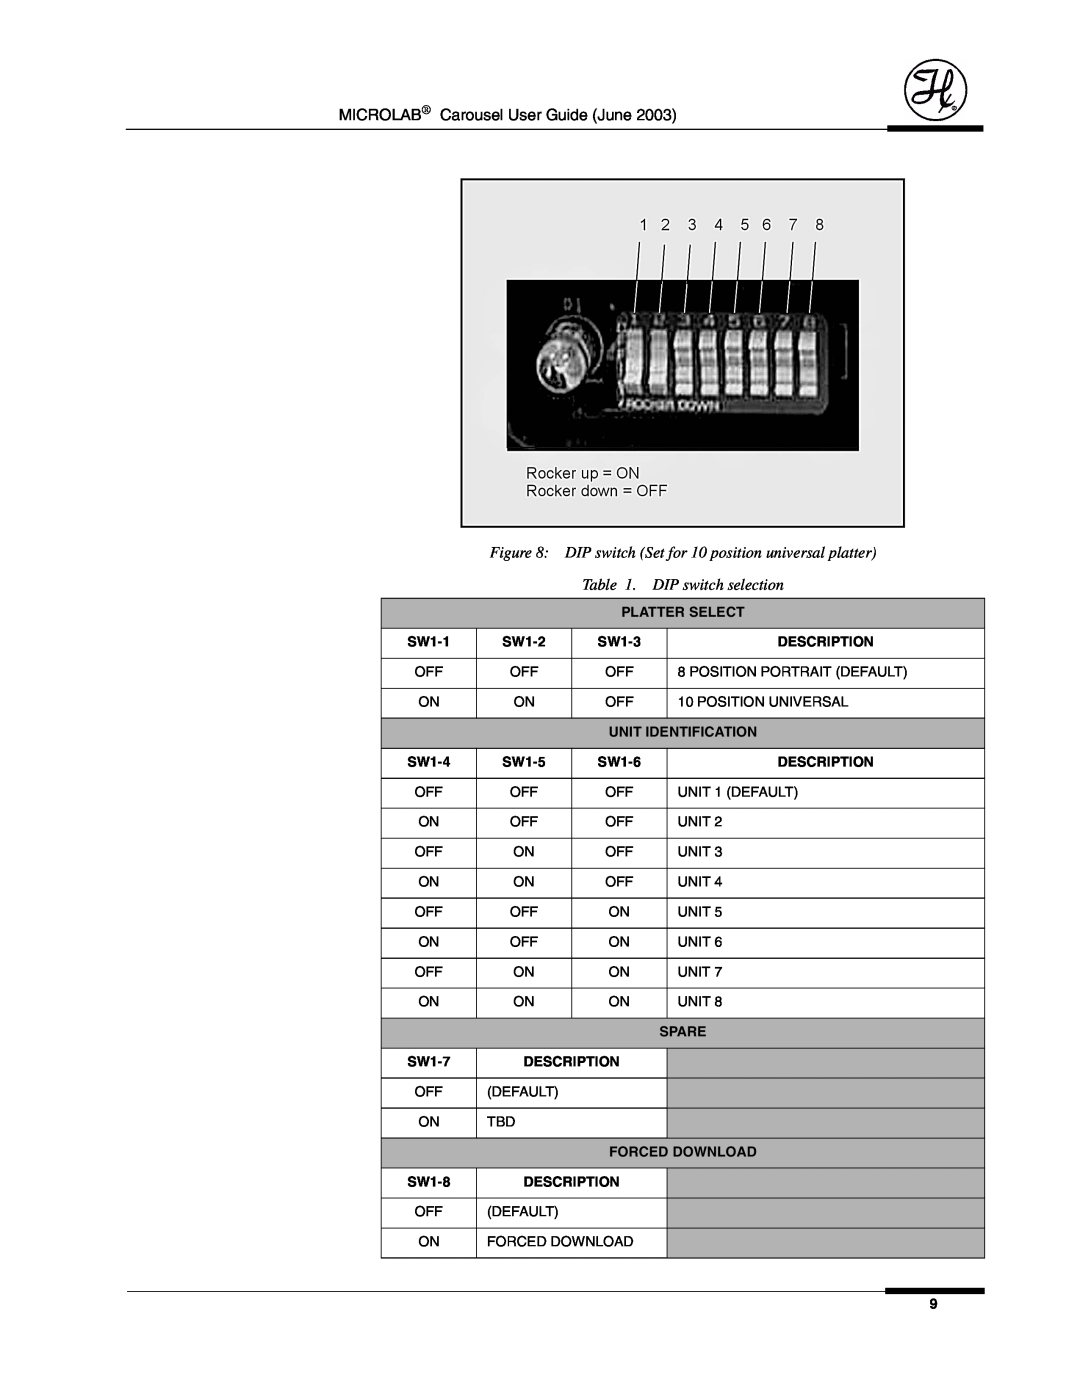 Hamilton Electronics 8534-01 manual Platter Select, Description, Unit Identification, Spare, Forced Download 